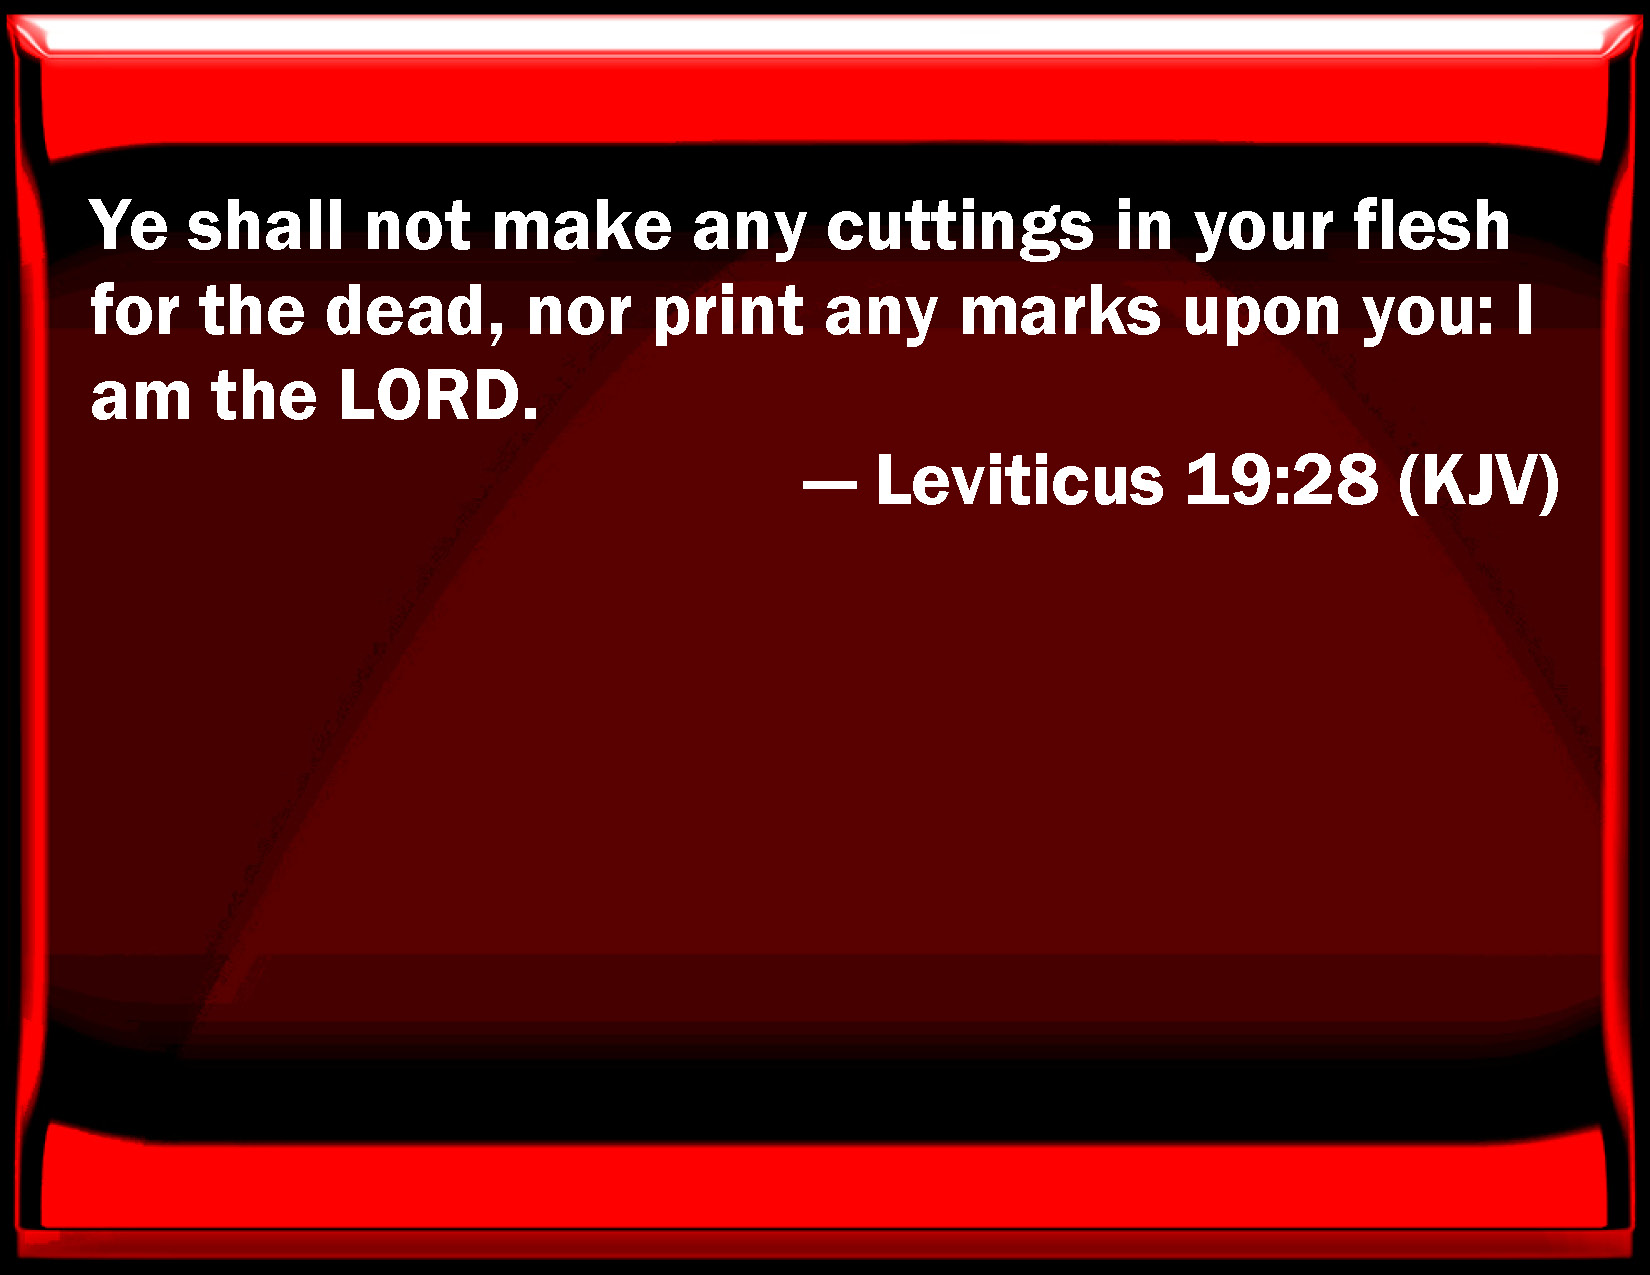 Leviticus 19:28 - wide 8